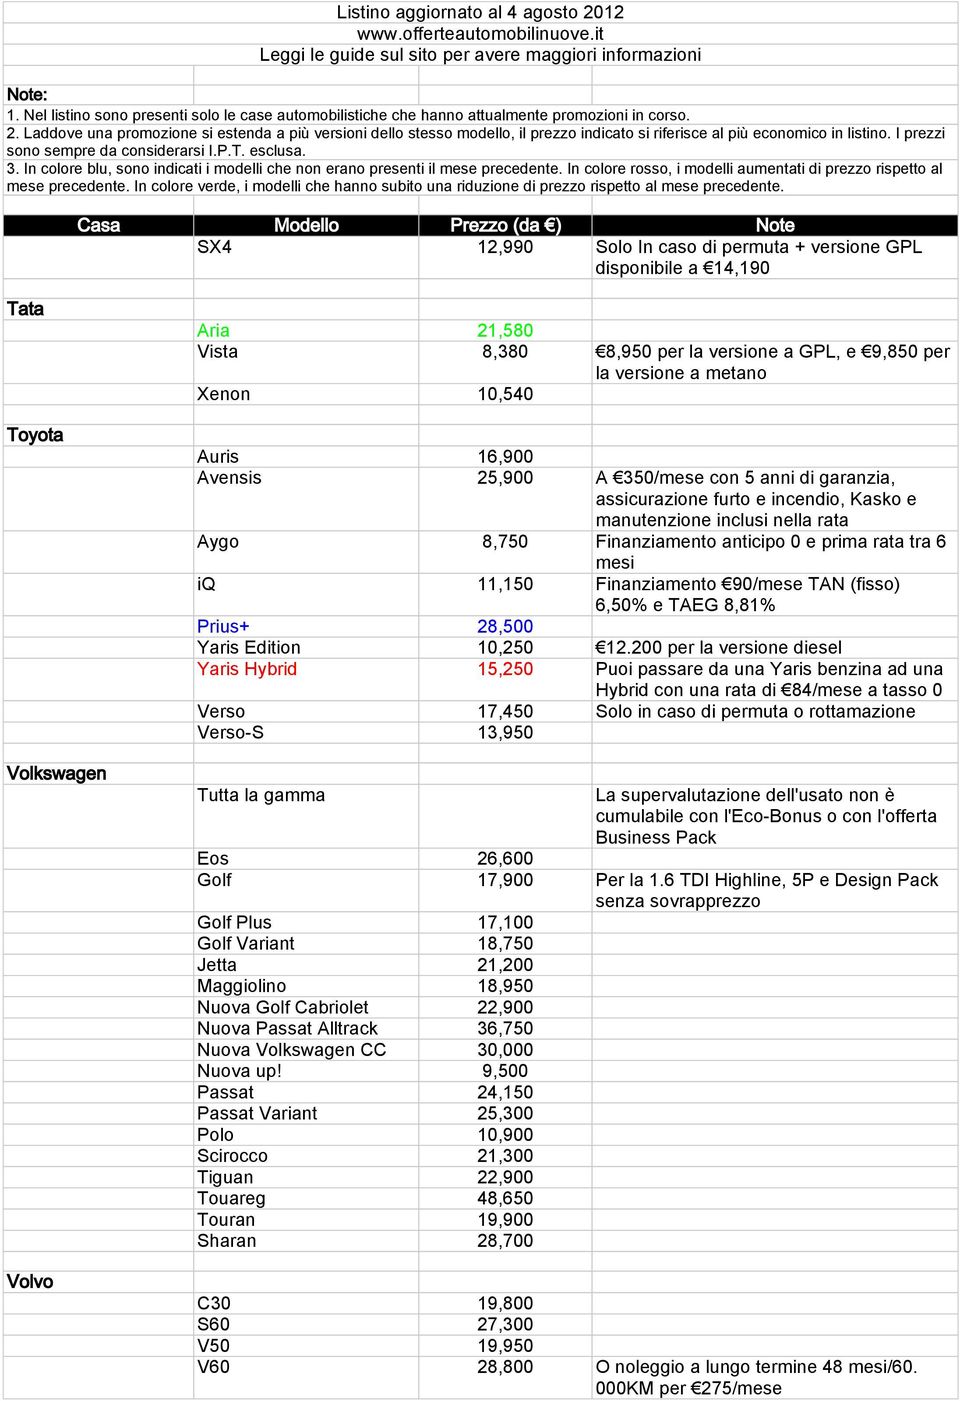 Finanziamento 90/mese TAN (fisso) 6,50% e TAEG 8,81% Prius+ 28,500 Yaris Edition 10,250 12.